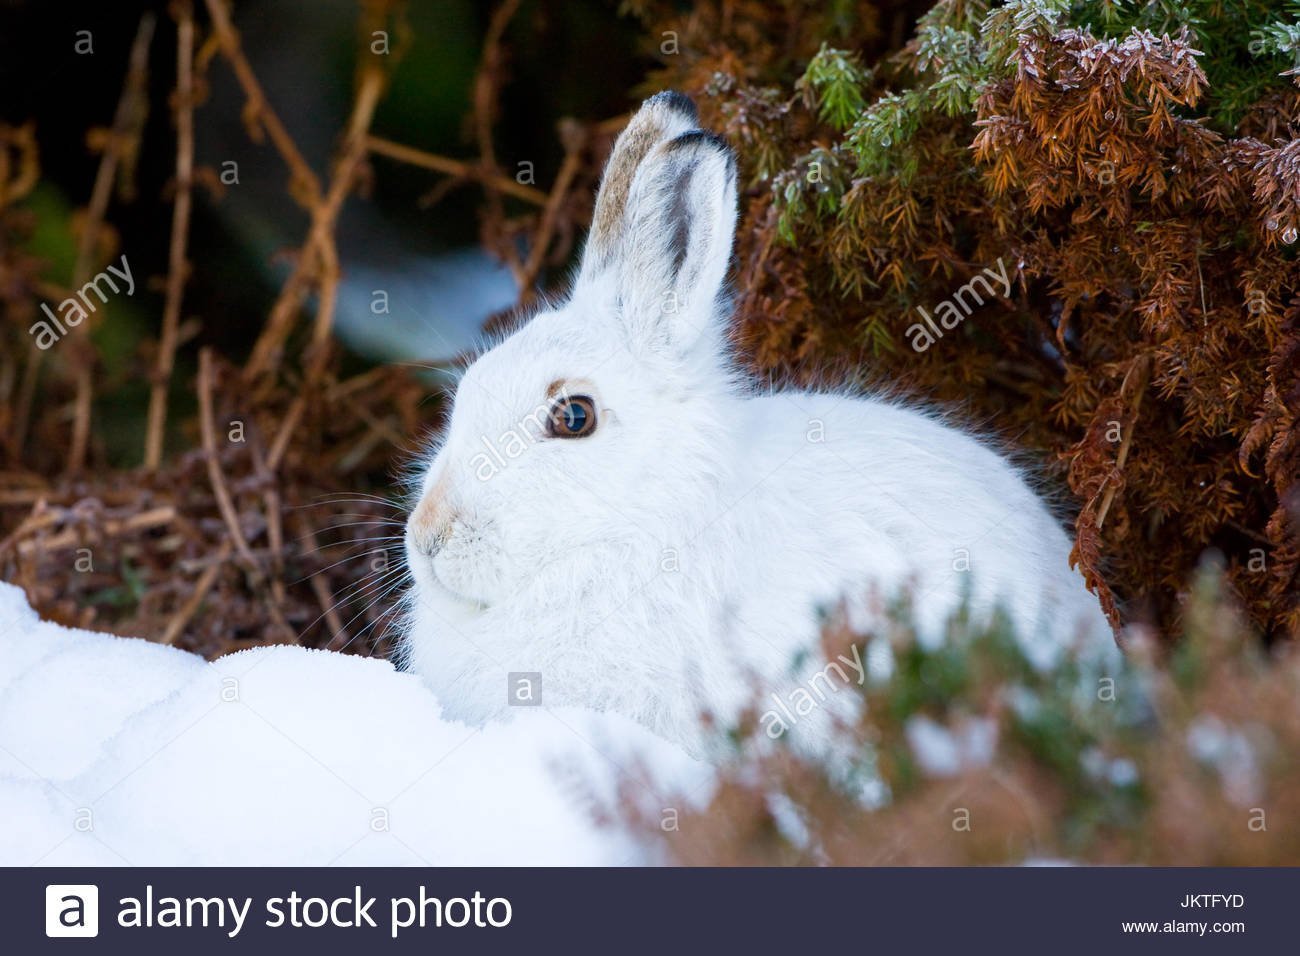 Цвет шерсти зайца. Заяц Беляк белый. Заяц Беляк с зайчатами. Заяц Беляк Сибирь. Заяц Беляк в лесотундре.